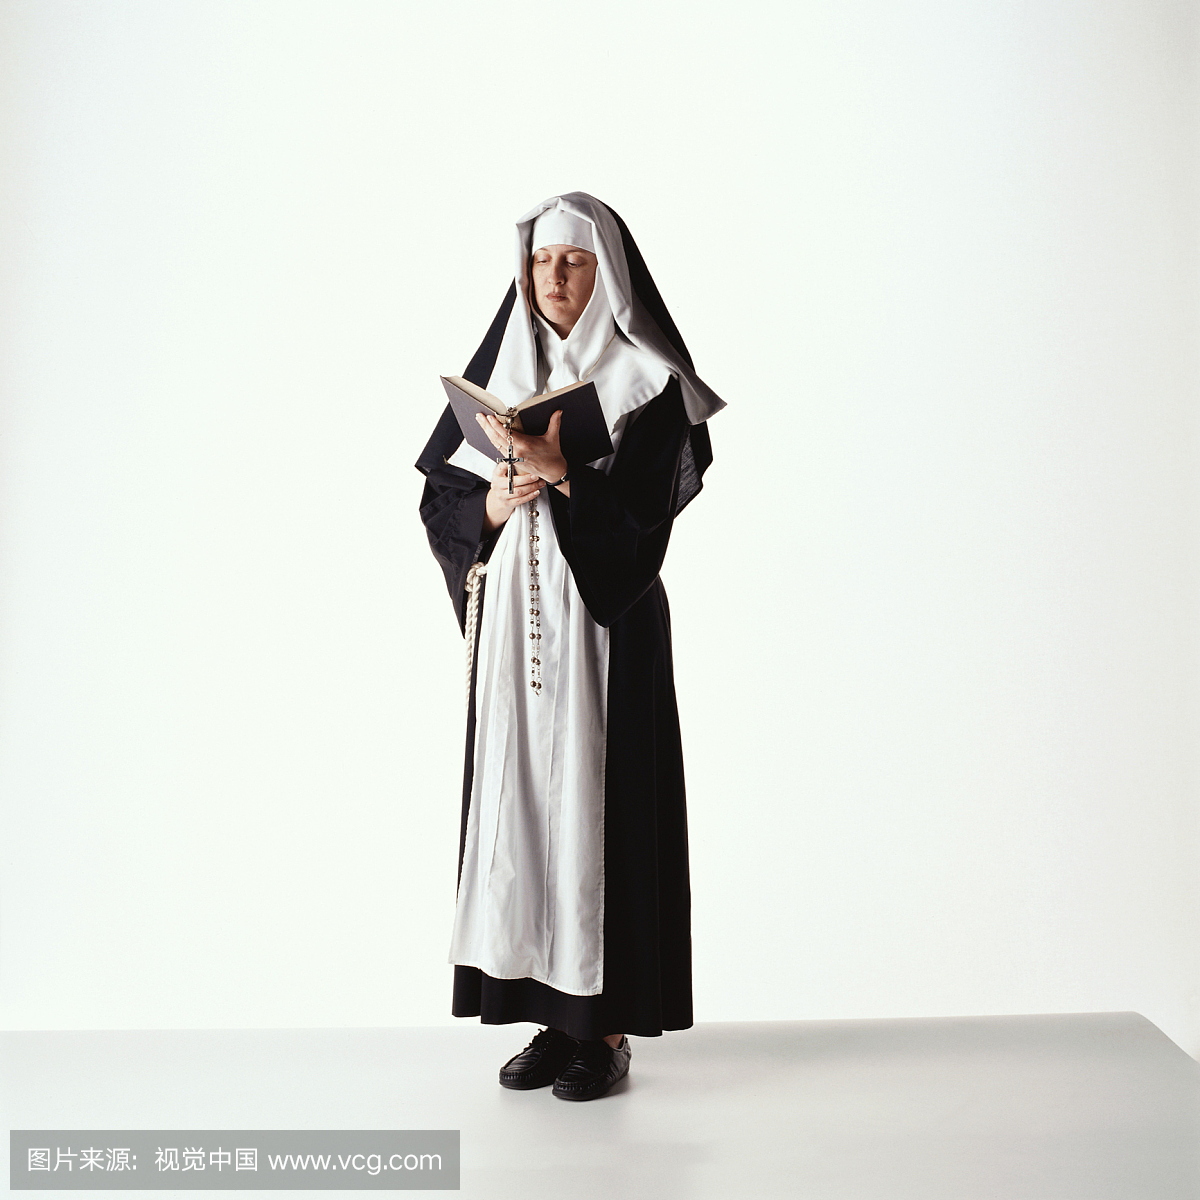 600,000+张最精彩的“修女”图片 · 100%免费下载 · Pexels素材图片